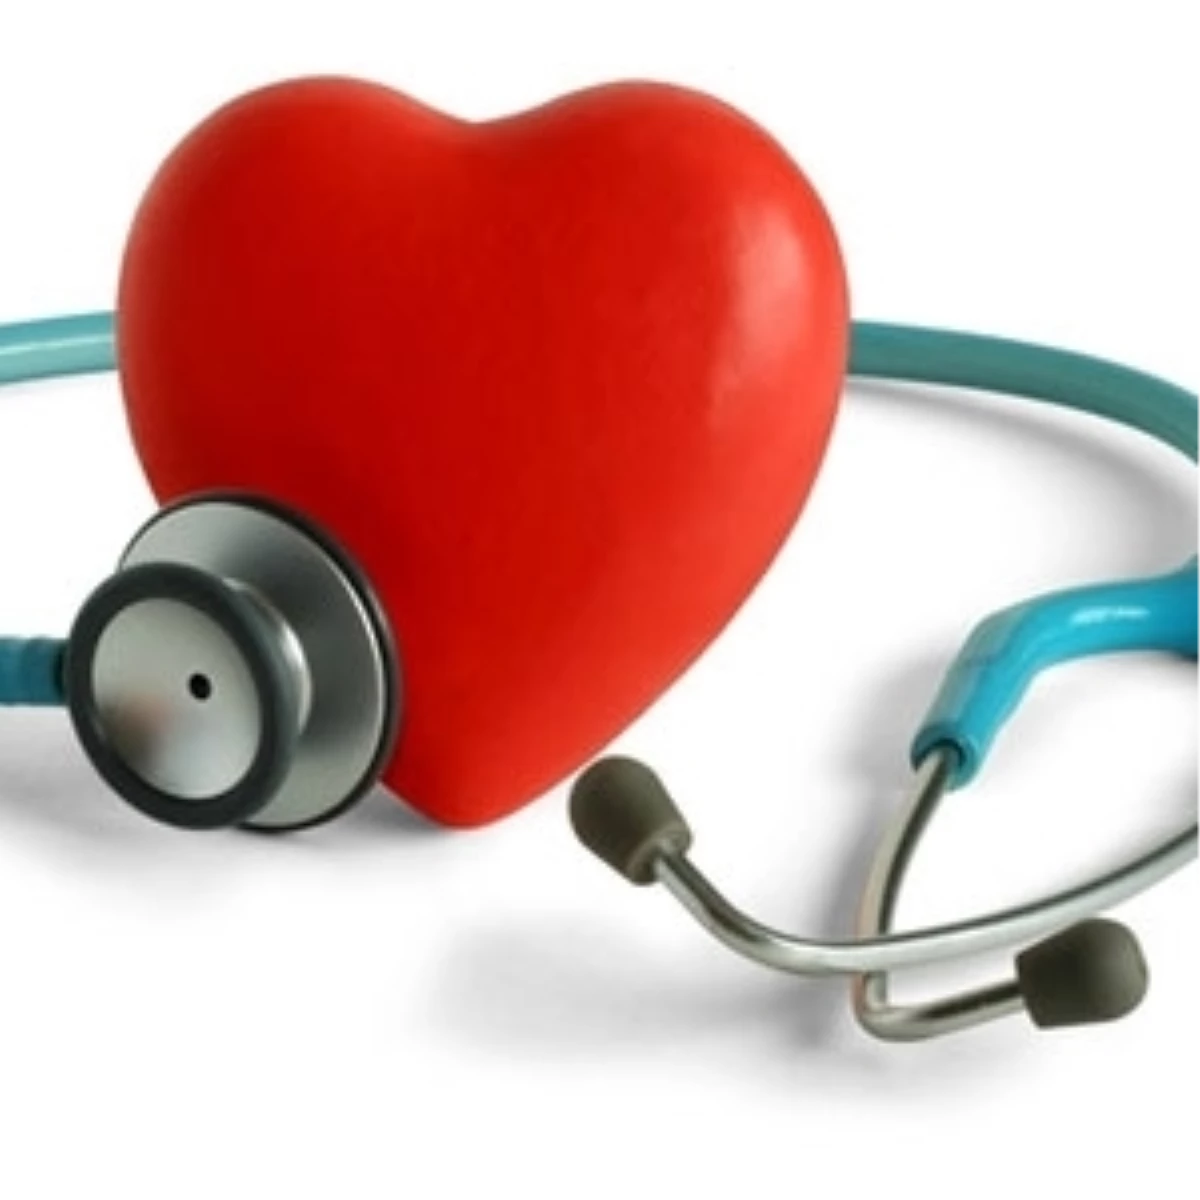 Cerrahi Şansı Olmayan Kalp Yetmezliği Hastalarına Müjde